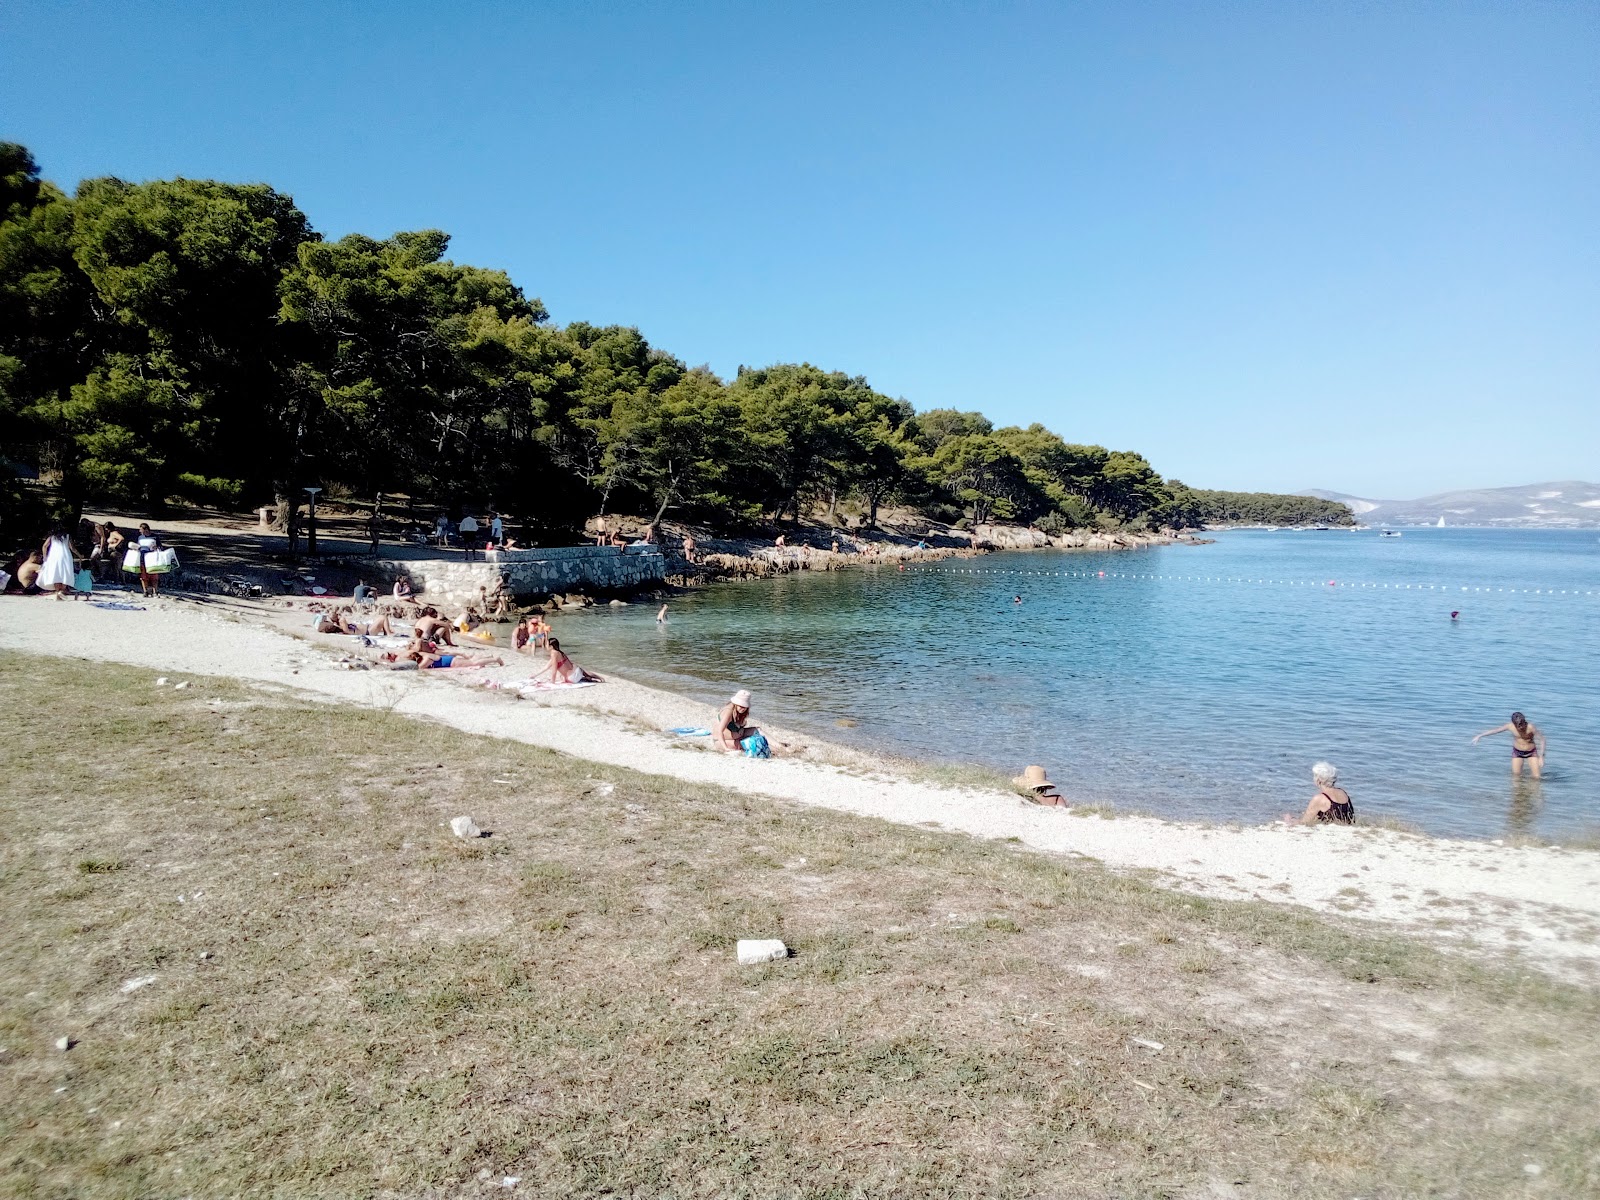 Prva Voda beach'in fotoğrafı hafif çakıl yüzey ile